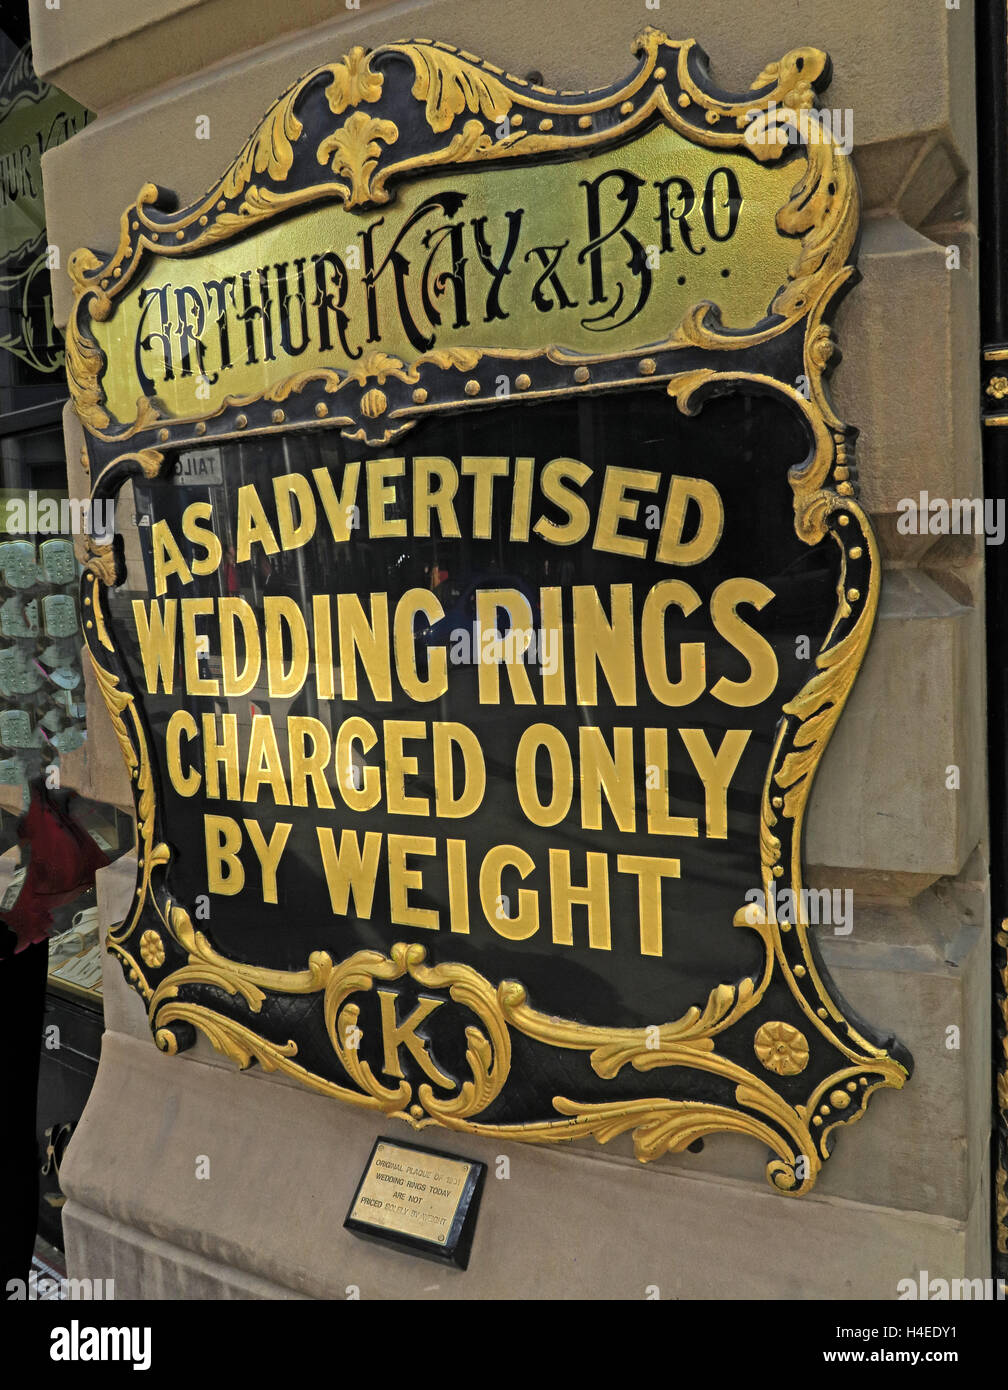 Arthur Kay gioiellerie,come pubblicizzato,gli anelli di nozze caricato solo da peso avviso, Market St, Manchester, Inghilterra, Regno Unito Foto Stock